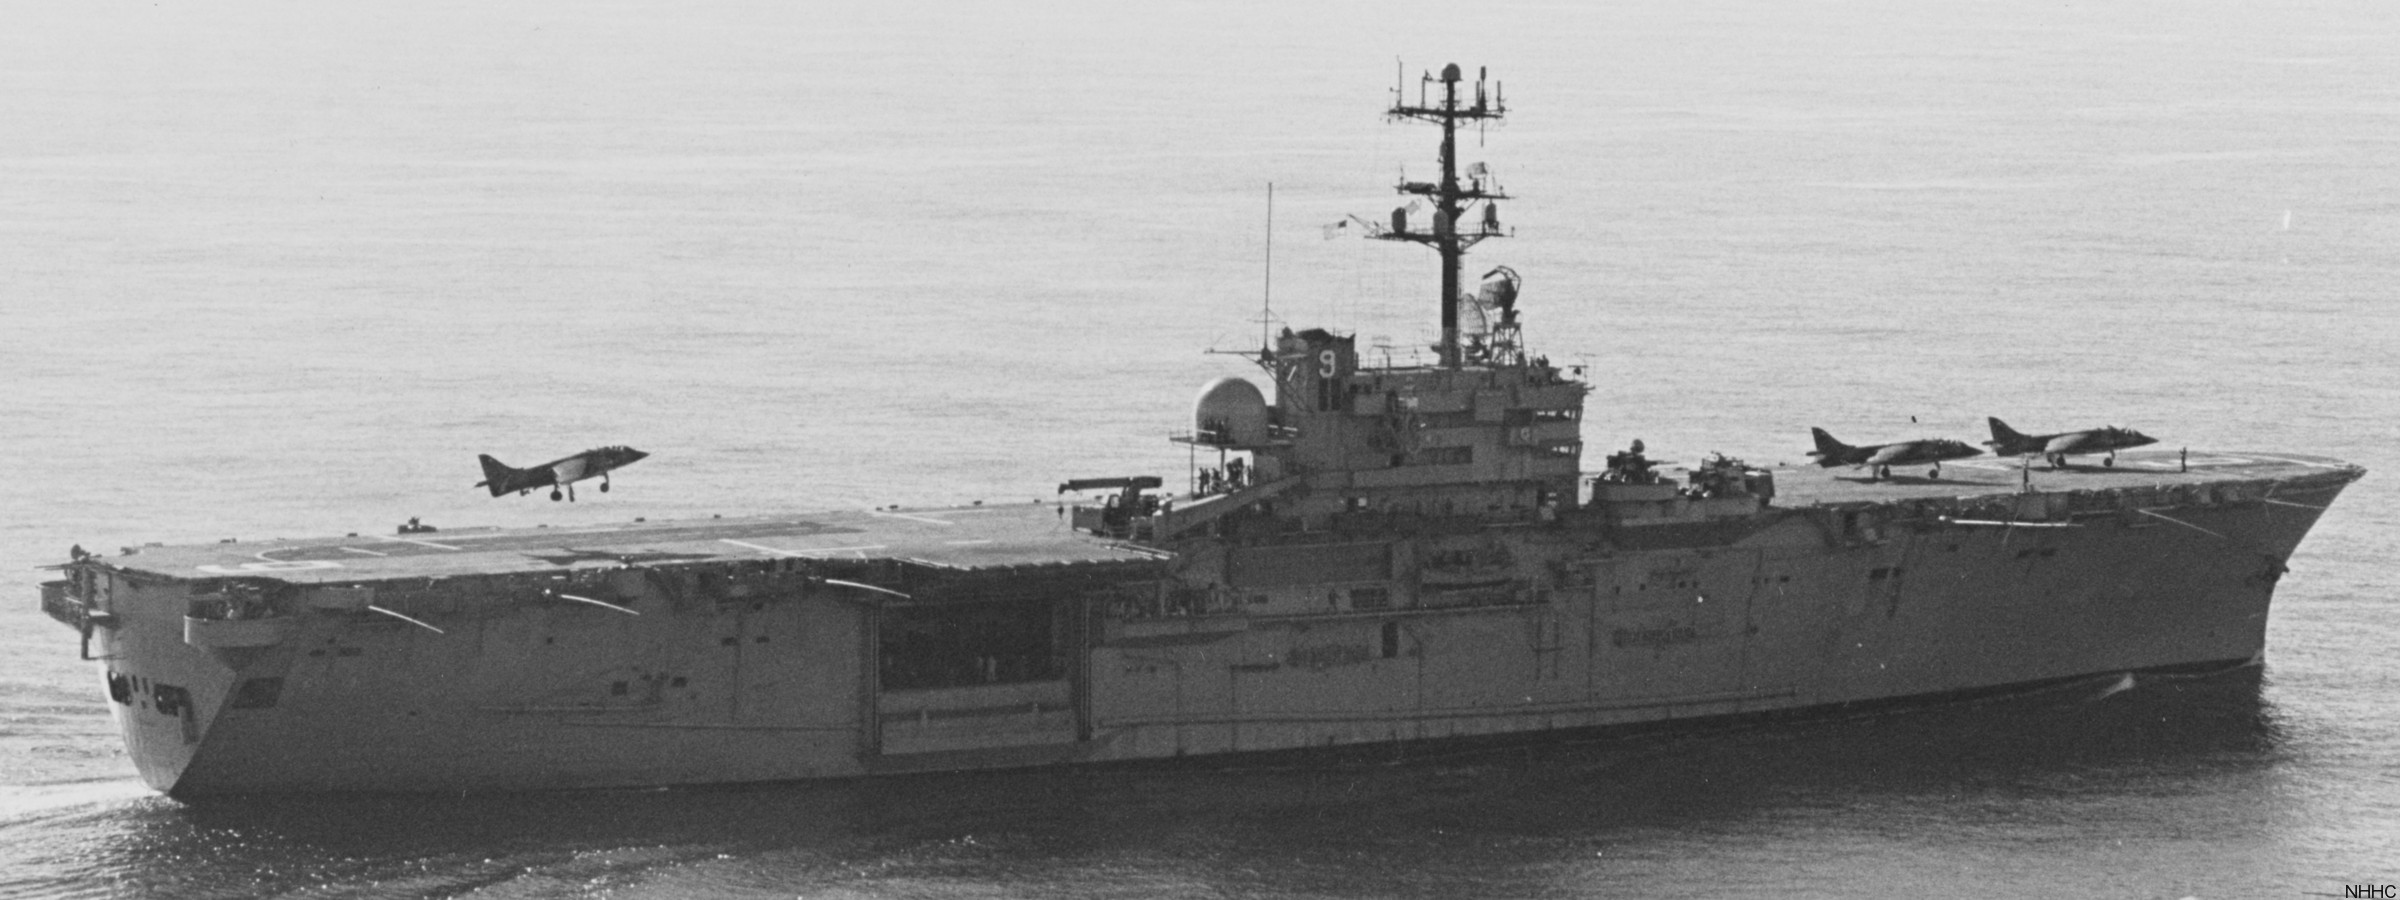 lph-9 uss guam iwo jima class amphibious assault ship landing platform helicopter us navy 04